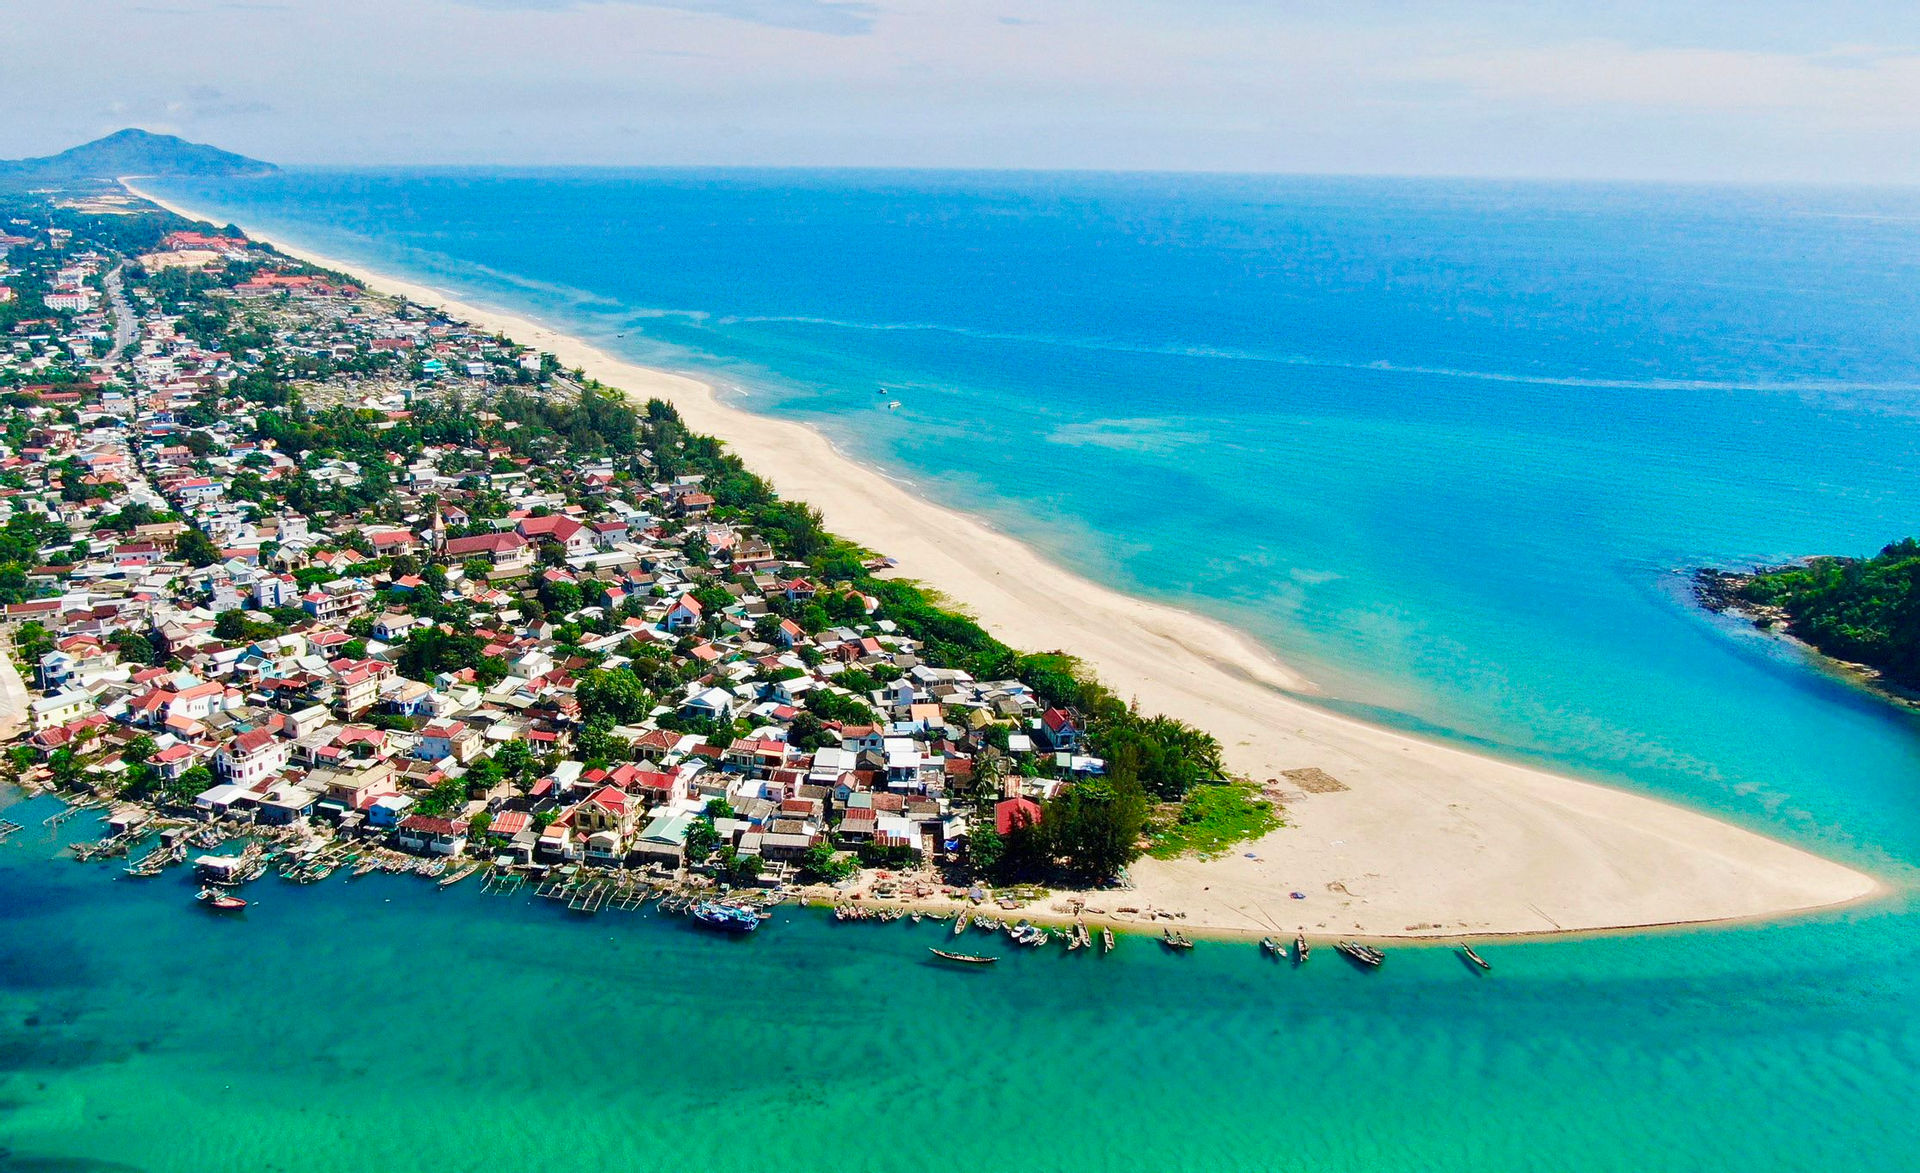 Bảo vệ vùng biển Thừa Thiên Huế - Bài 3: “Động lực” từ kinh tế biển